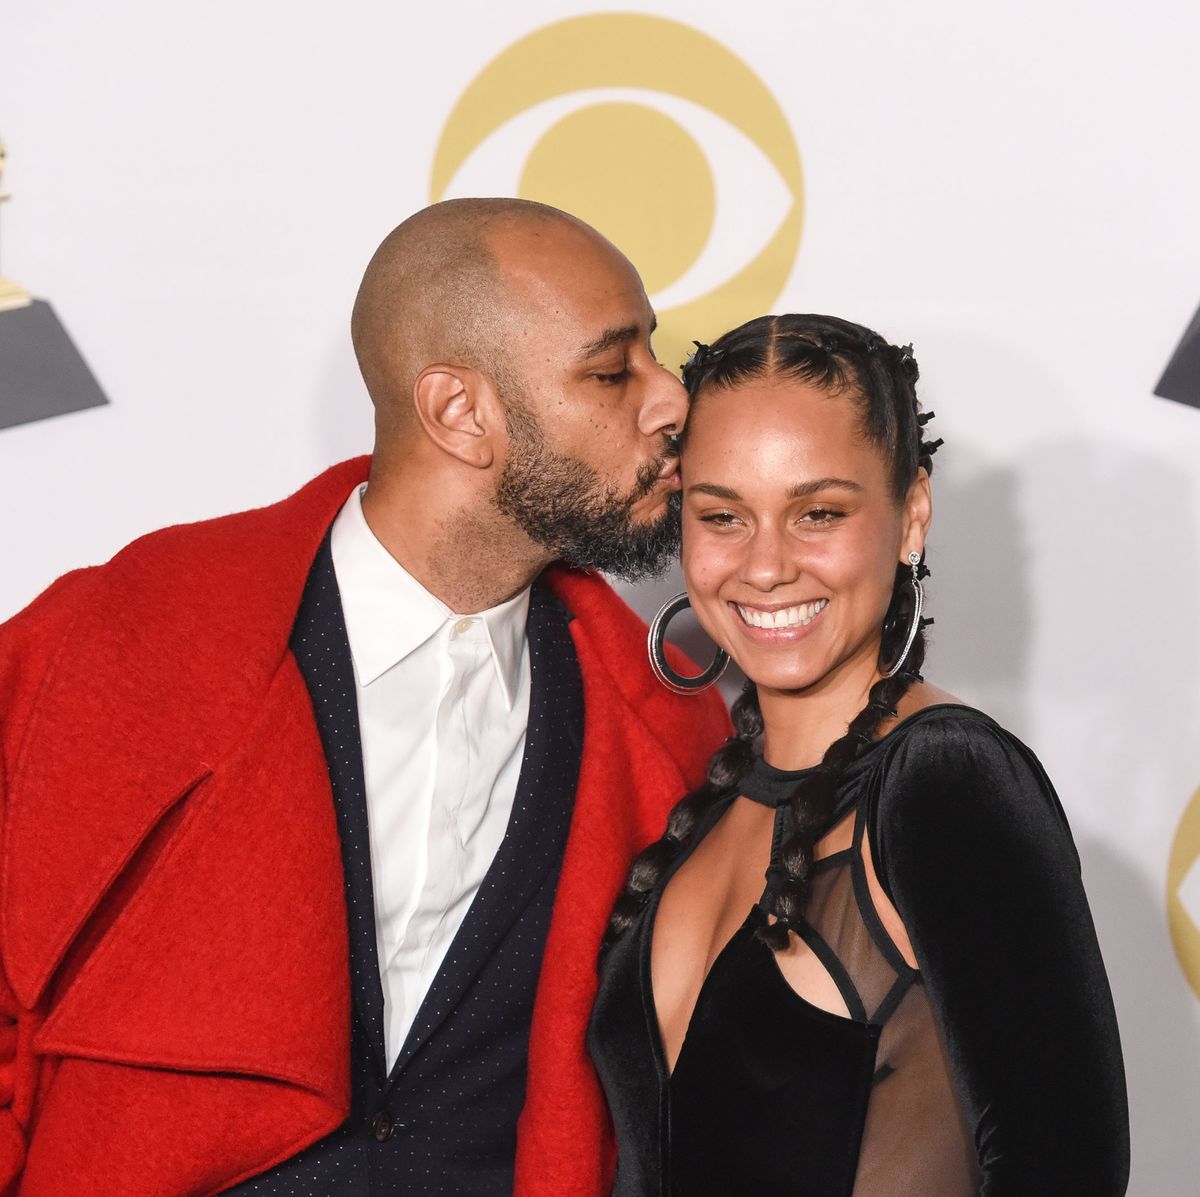 12eys Eys Sax Videos - Who Is Swizz Beatz? - Meet Alicia Keys' Husband and Hip-Hop Producer